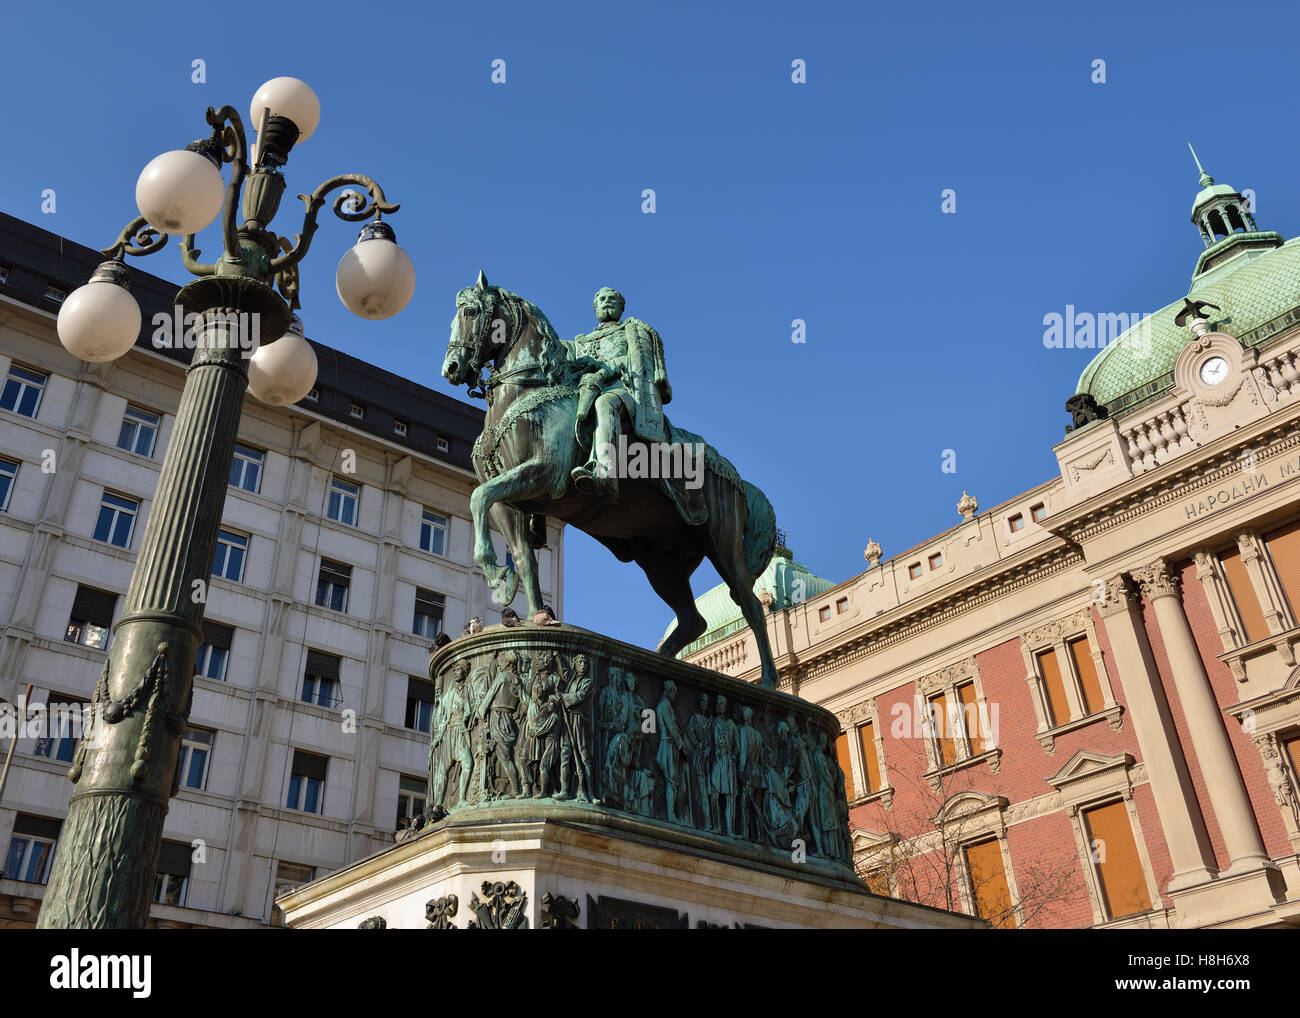 Belgrade, Serbia. Prince Mihailo Monument in the Republic Square. Stock Photo